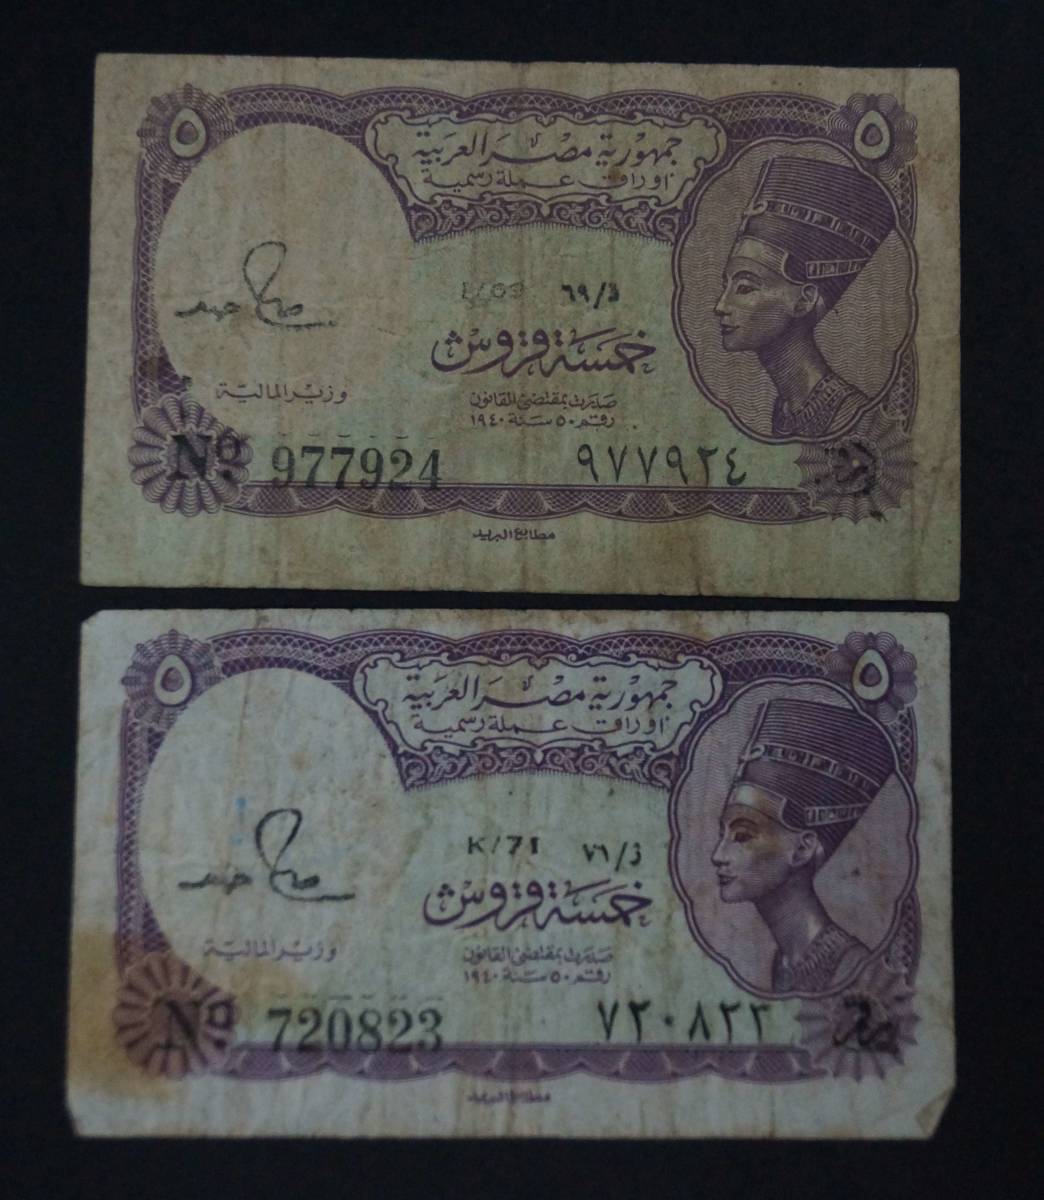 【寂】エジプト 5ピアストル ネフェルティティ王妃 紙幣 旧紙幣 5枚セット s51214_画像2